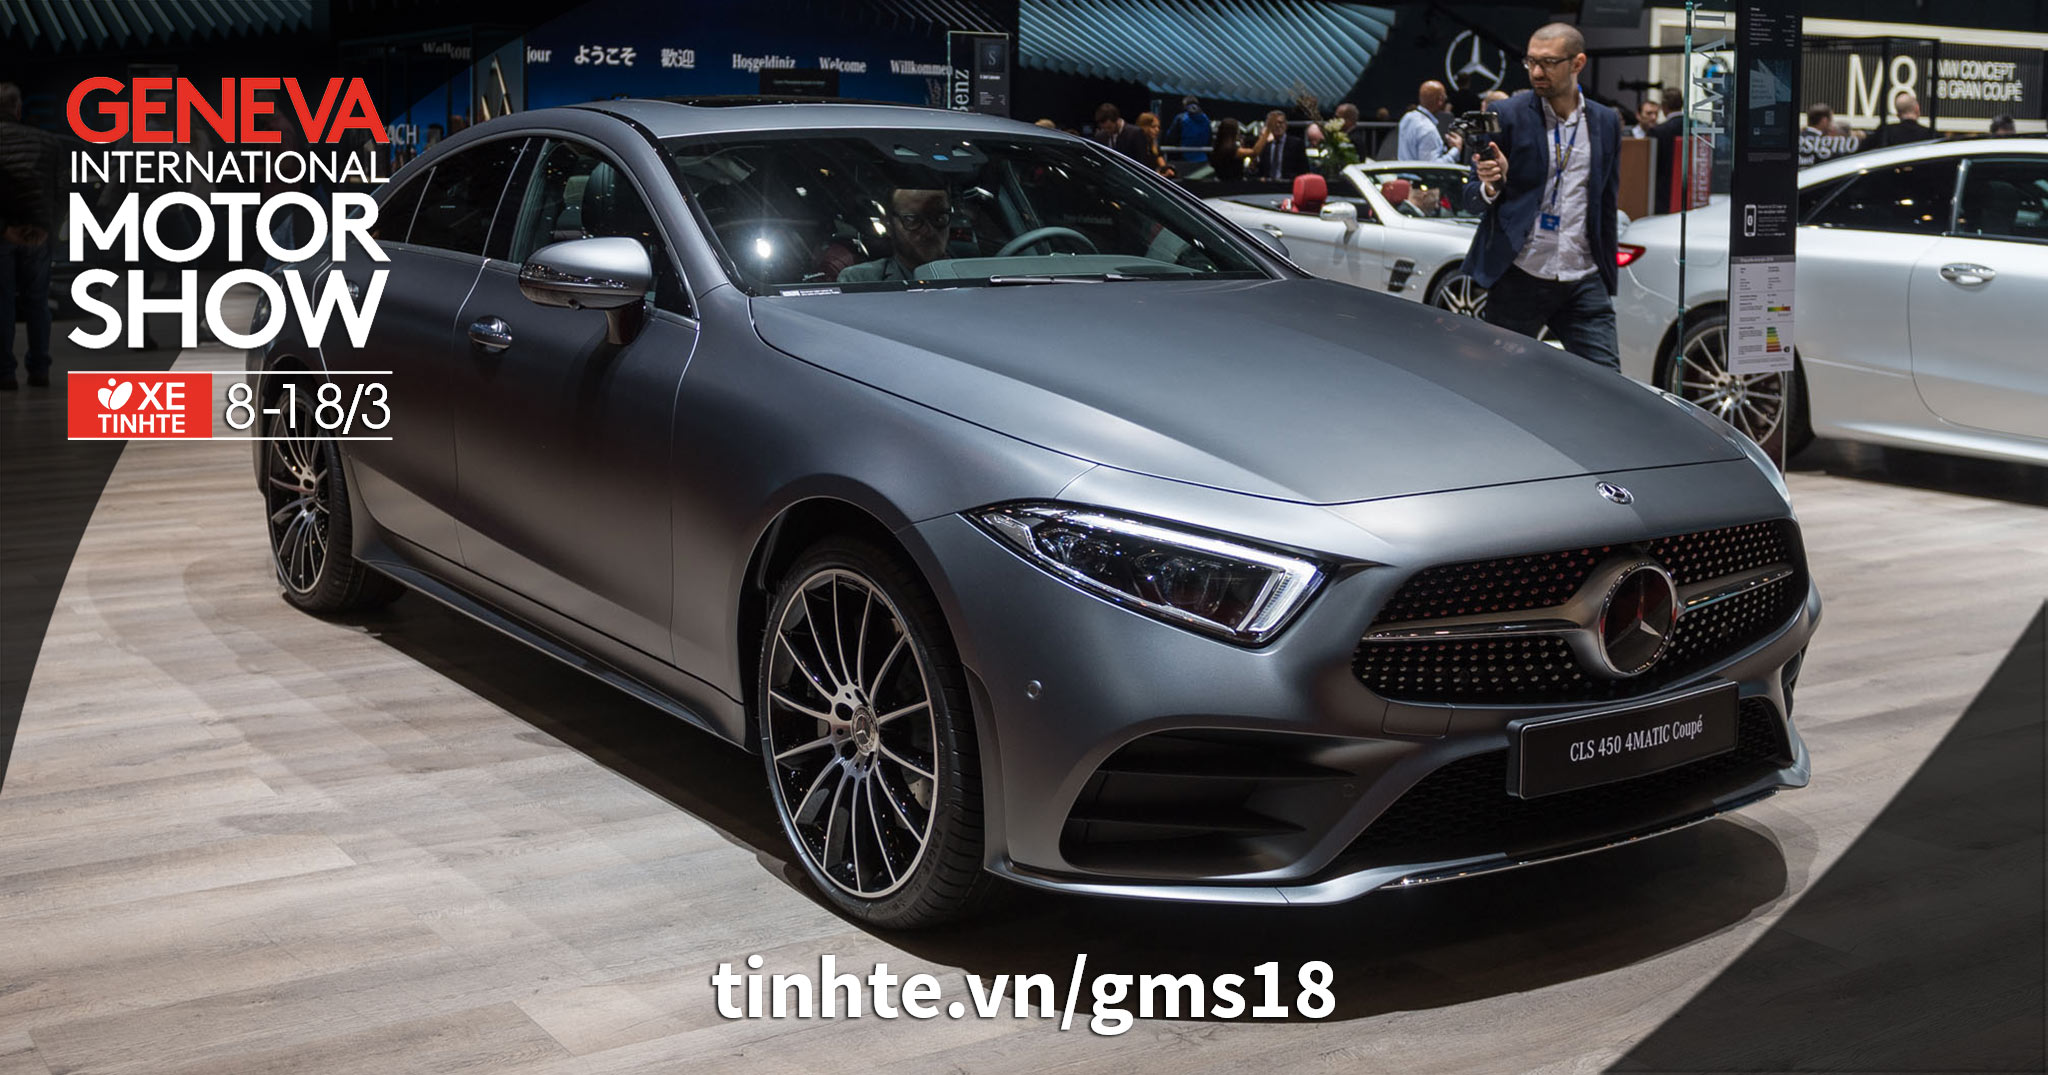 #GMS18 Chi tiết Mercedes-Benz CLS-Class thế hệ thứ 3: thiết kế đẹp, nội thất giống E-Class Coupe